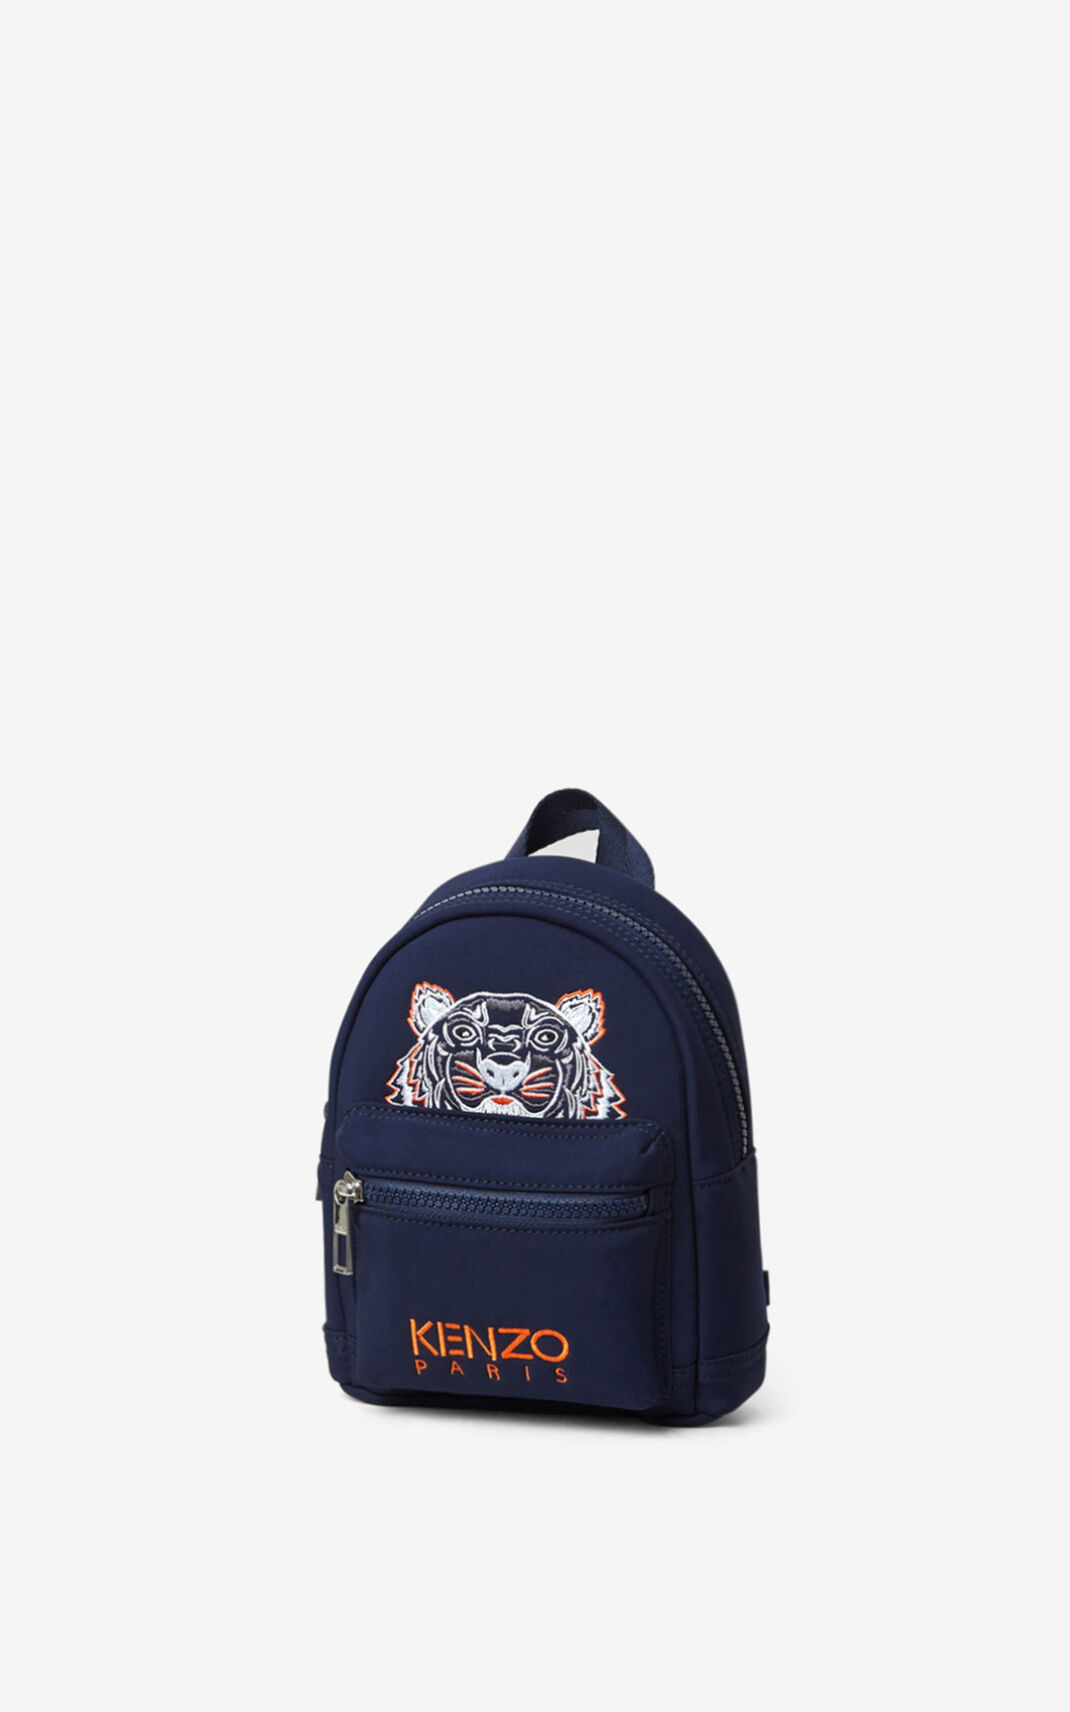 Kenzo Mini Neoprene Tiger Backpack Navy Blue For Womens 6371LFWPT